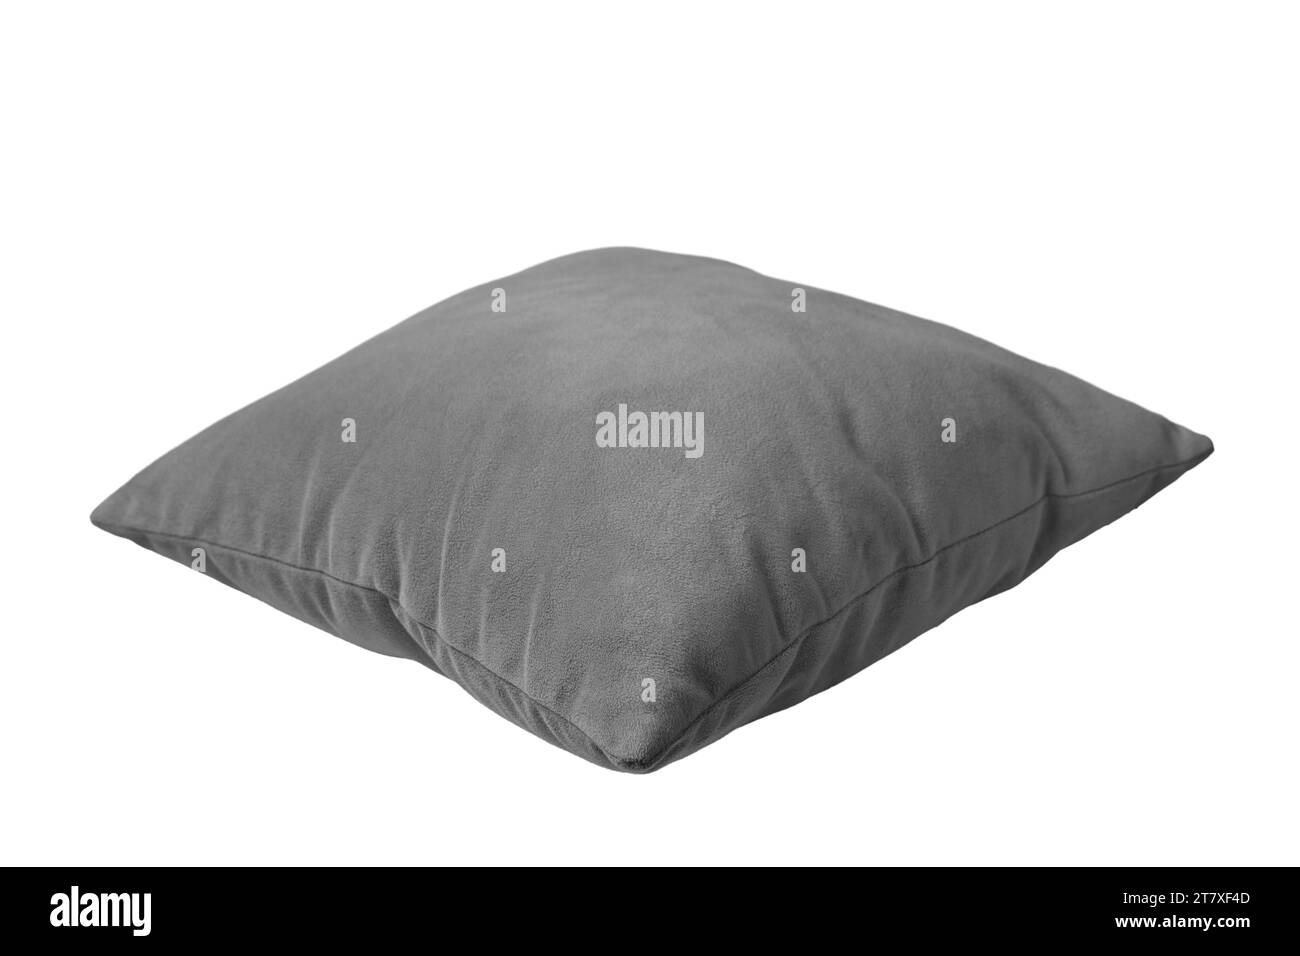 Coussin rectangulaire gris décoratif pour dormir et se reposer isolé sur fond blanc. Coussin pour la décoration intérieure de la maison, maquette de taie d'oreiller, modèle Banque D'Images